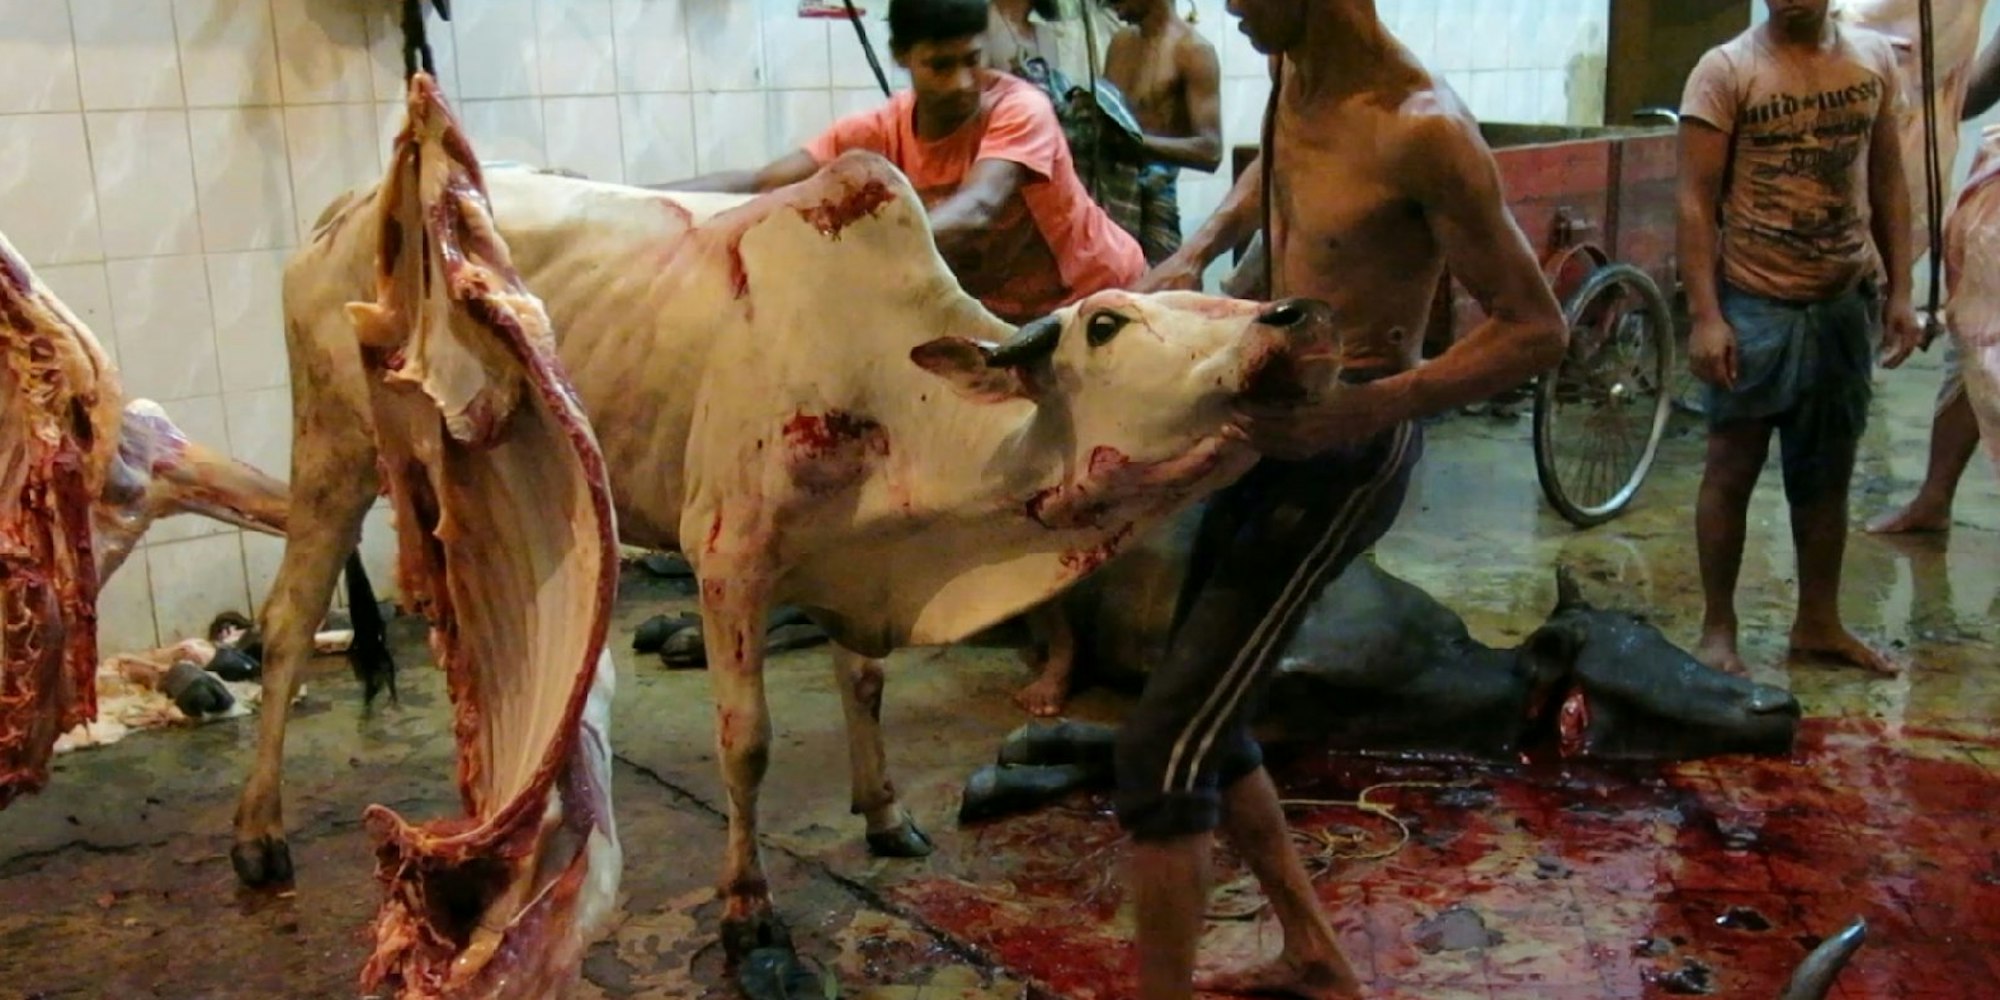 Schlachthof in Bangladesch: Hier werden die Tiere brutal getötet – anschließend wird den Rindern die Haut abgezogen.